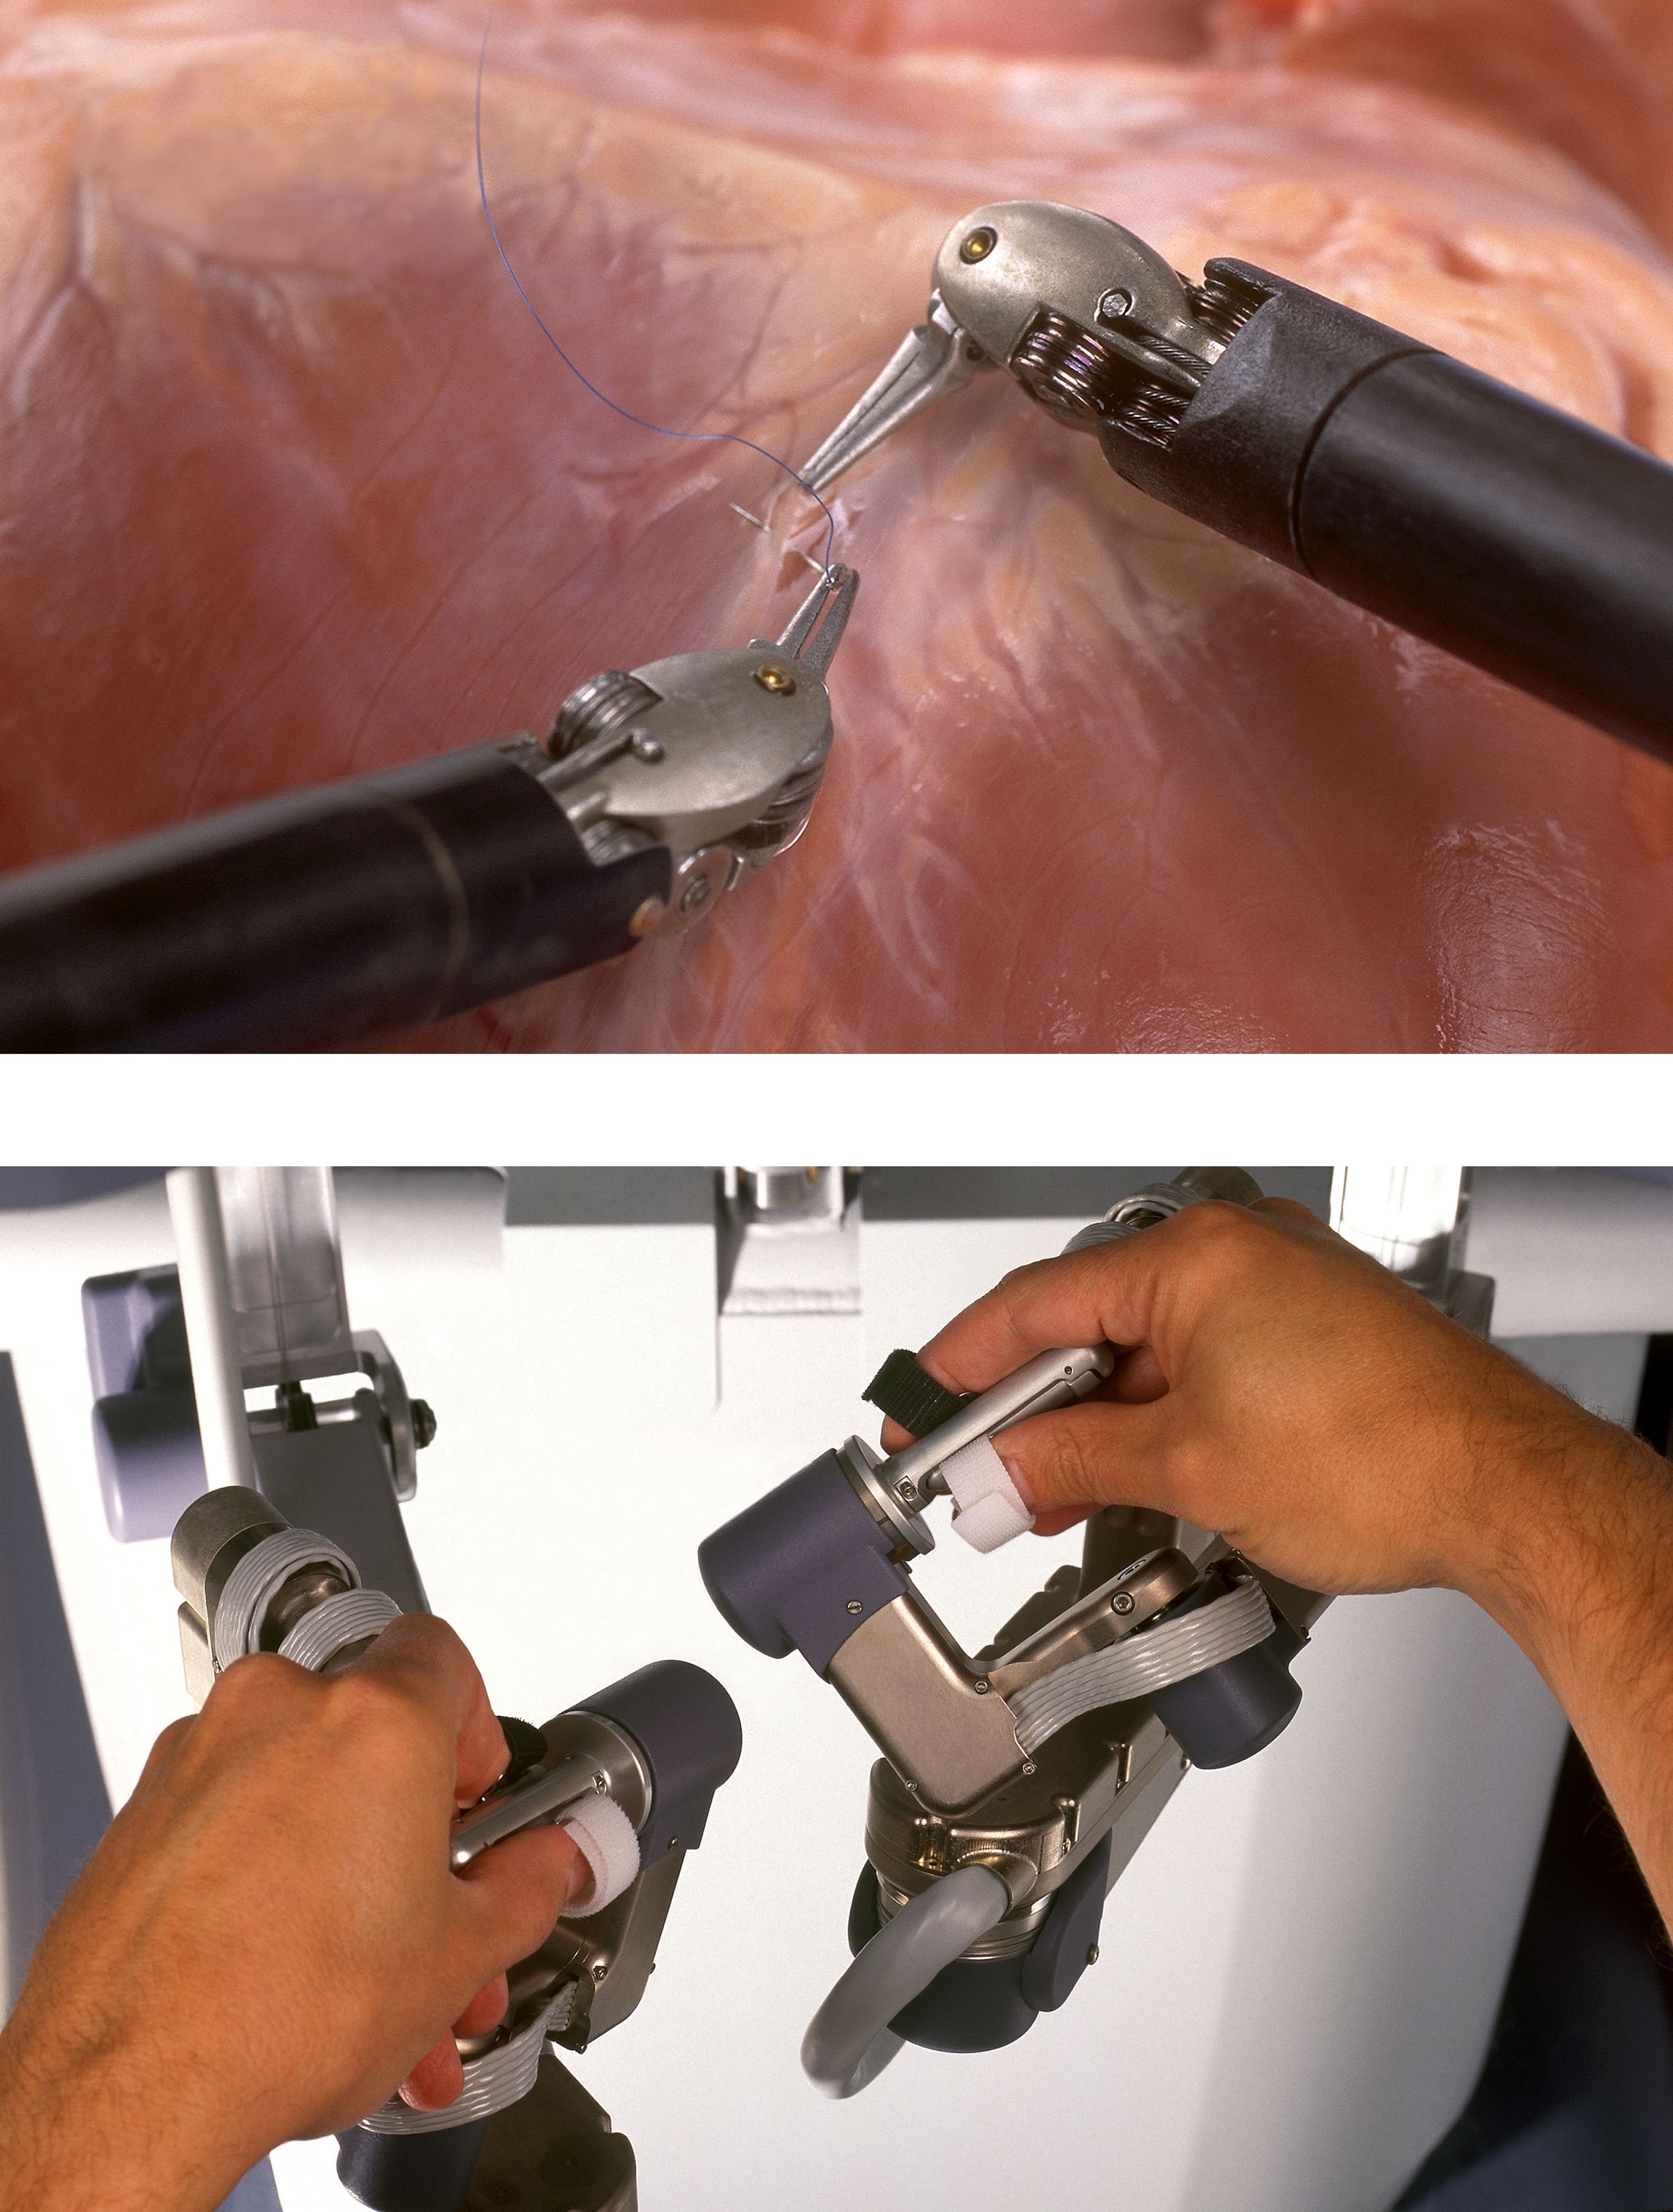 Los sistemas de cirugía robótica pueden mejorar los resultados del paciente, pero los cirujanos no pueden sentir las suturas o tejidos involucrados. Investigadores de la Universidad Johns Hopkins están desarrollando retroalimentación visual y sensores de fuerza para crear un sistema de cirugía asistida-por-robot que permita a los cirujanos mejor sensación de las fuerzas que ocurren en el campo de operación. ©2006 Intuitive Surgical, Inc.